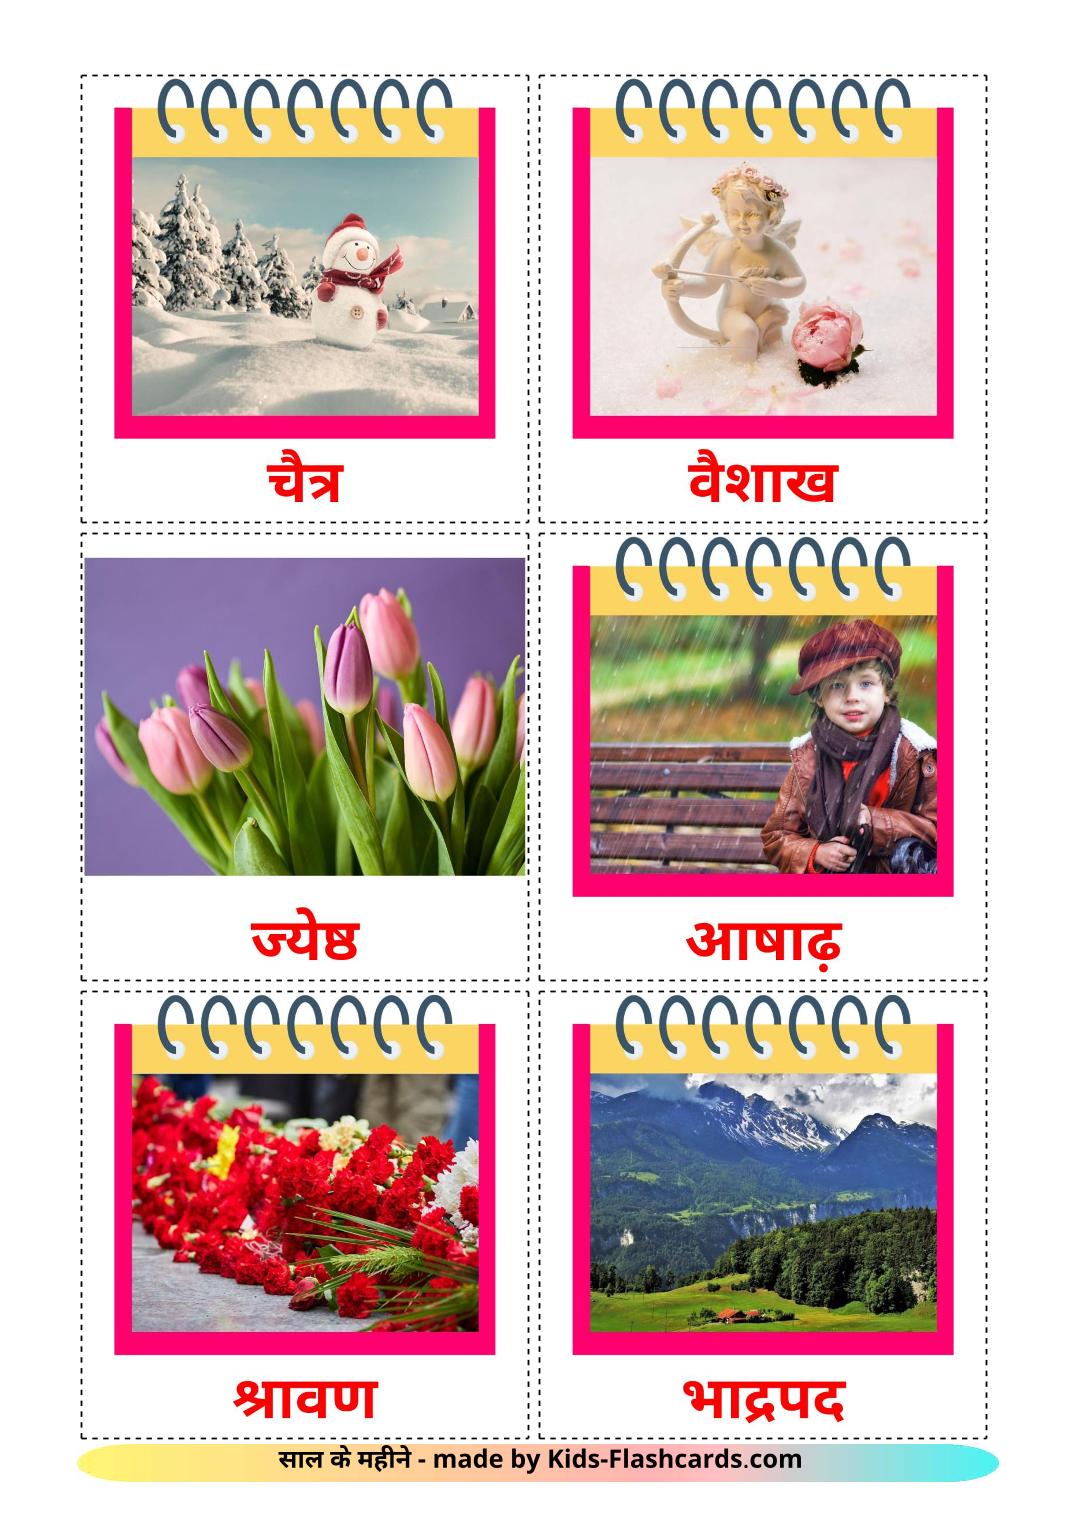 Maanden van het jaar - 12 gratis printbare hindie kaarten